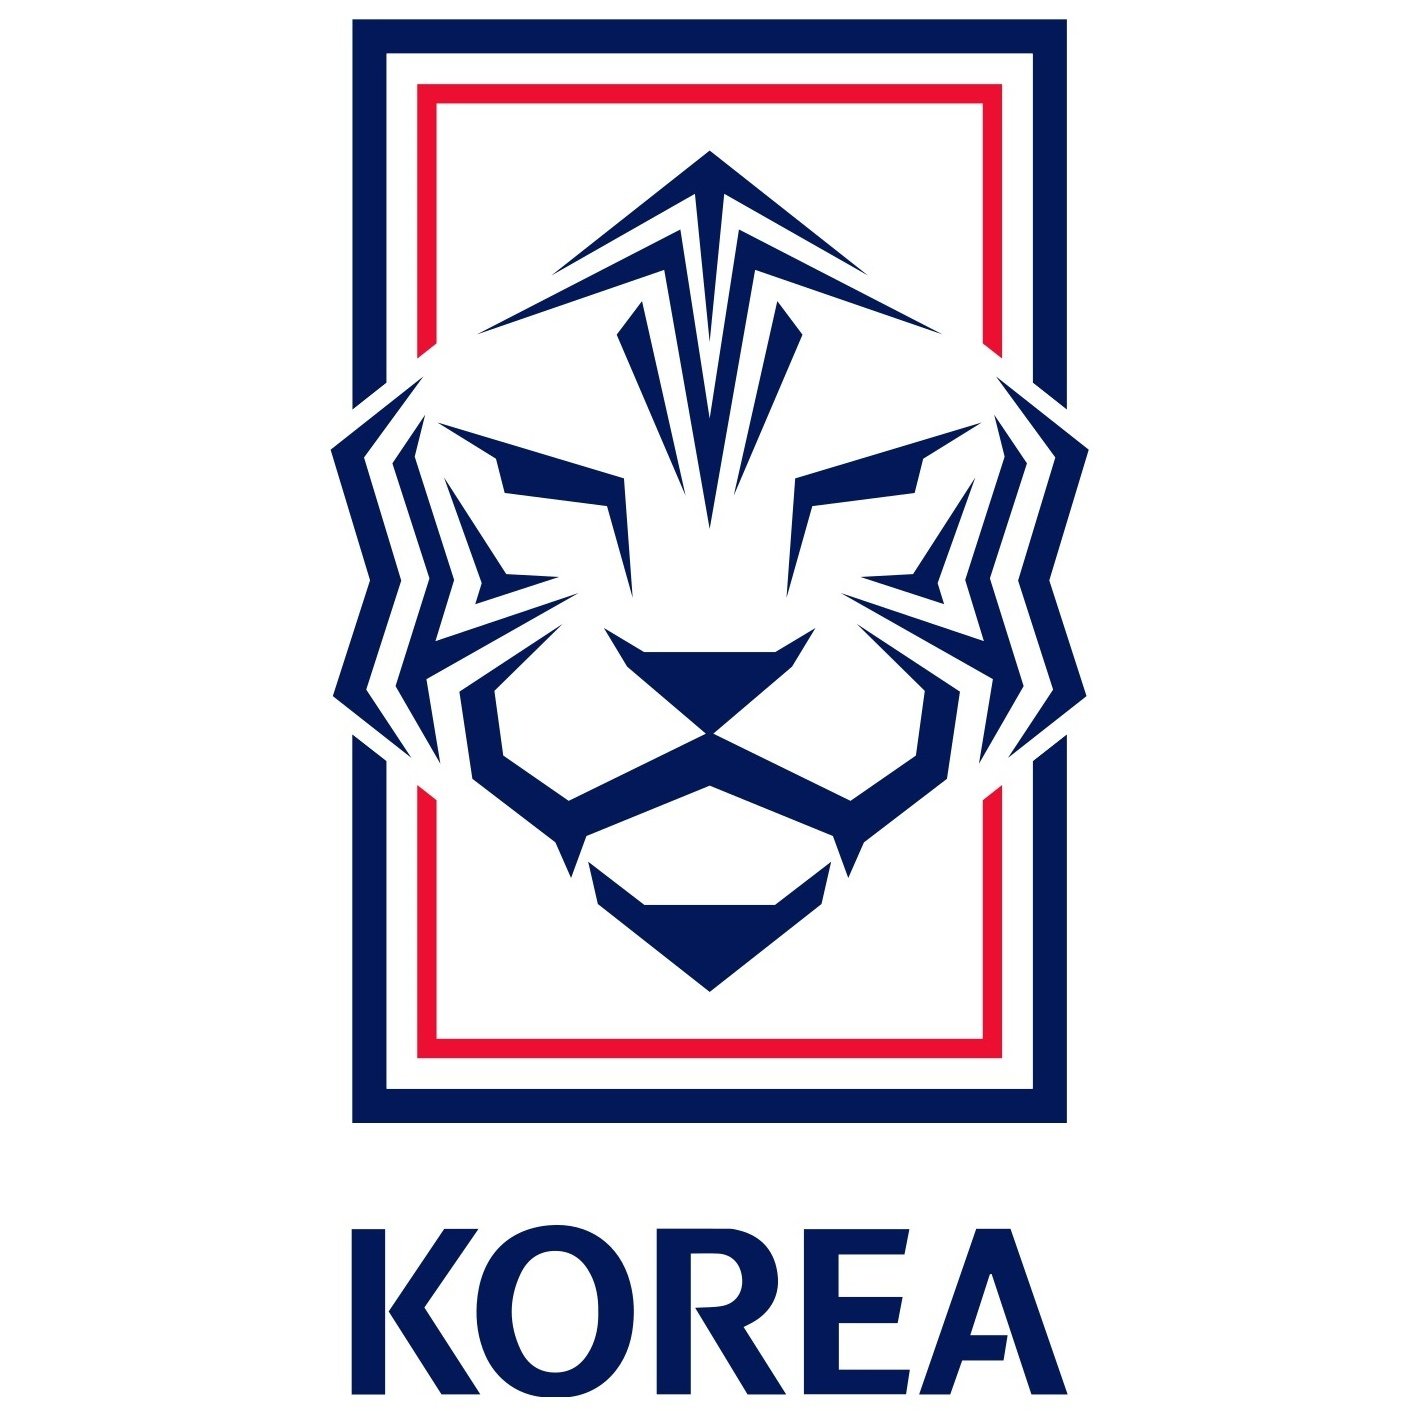 Corea del Sud